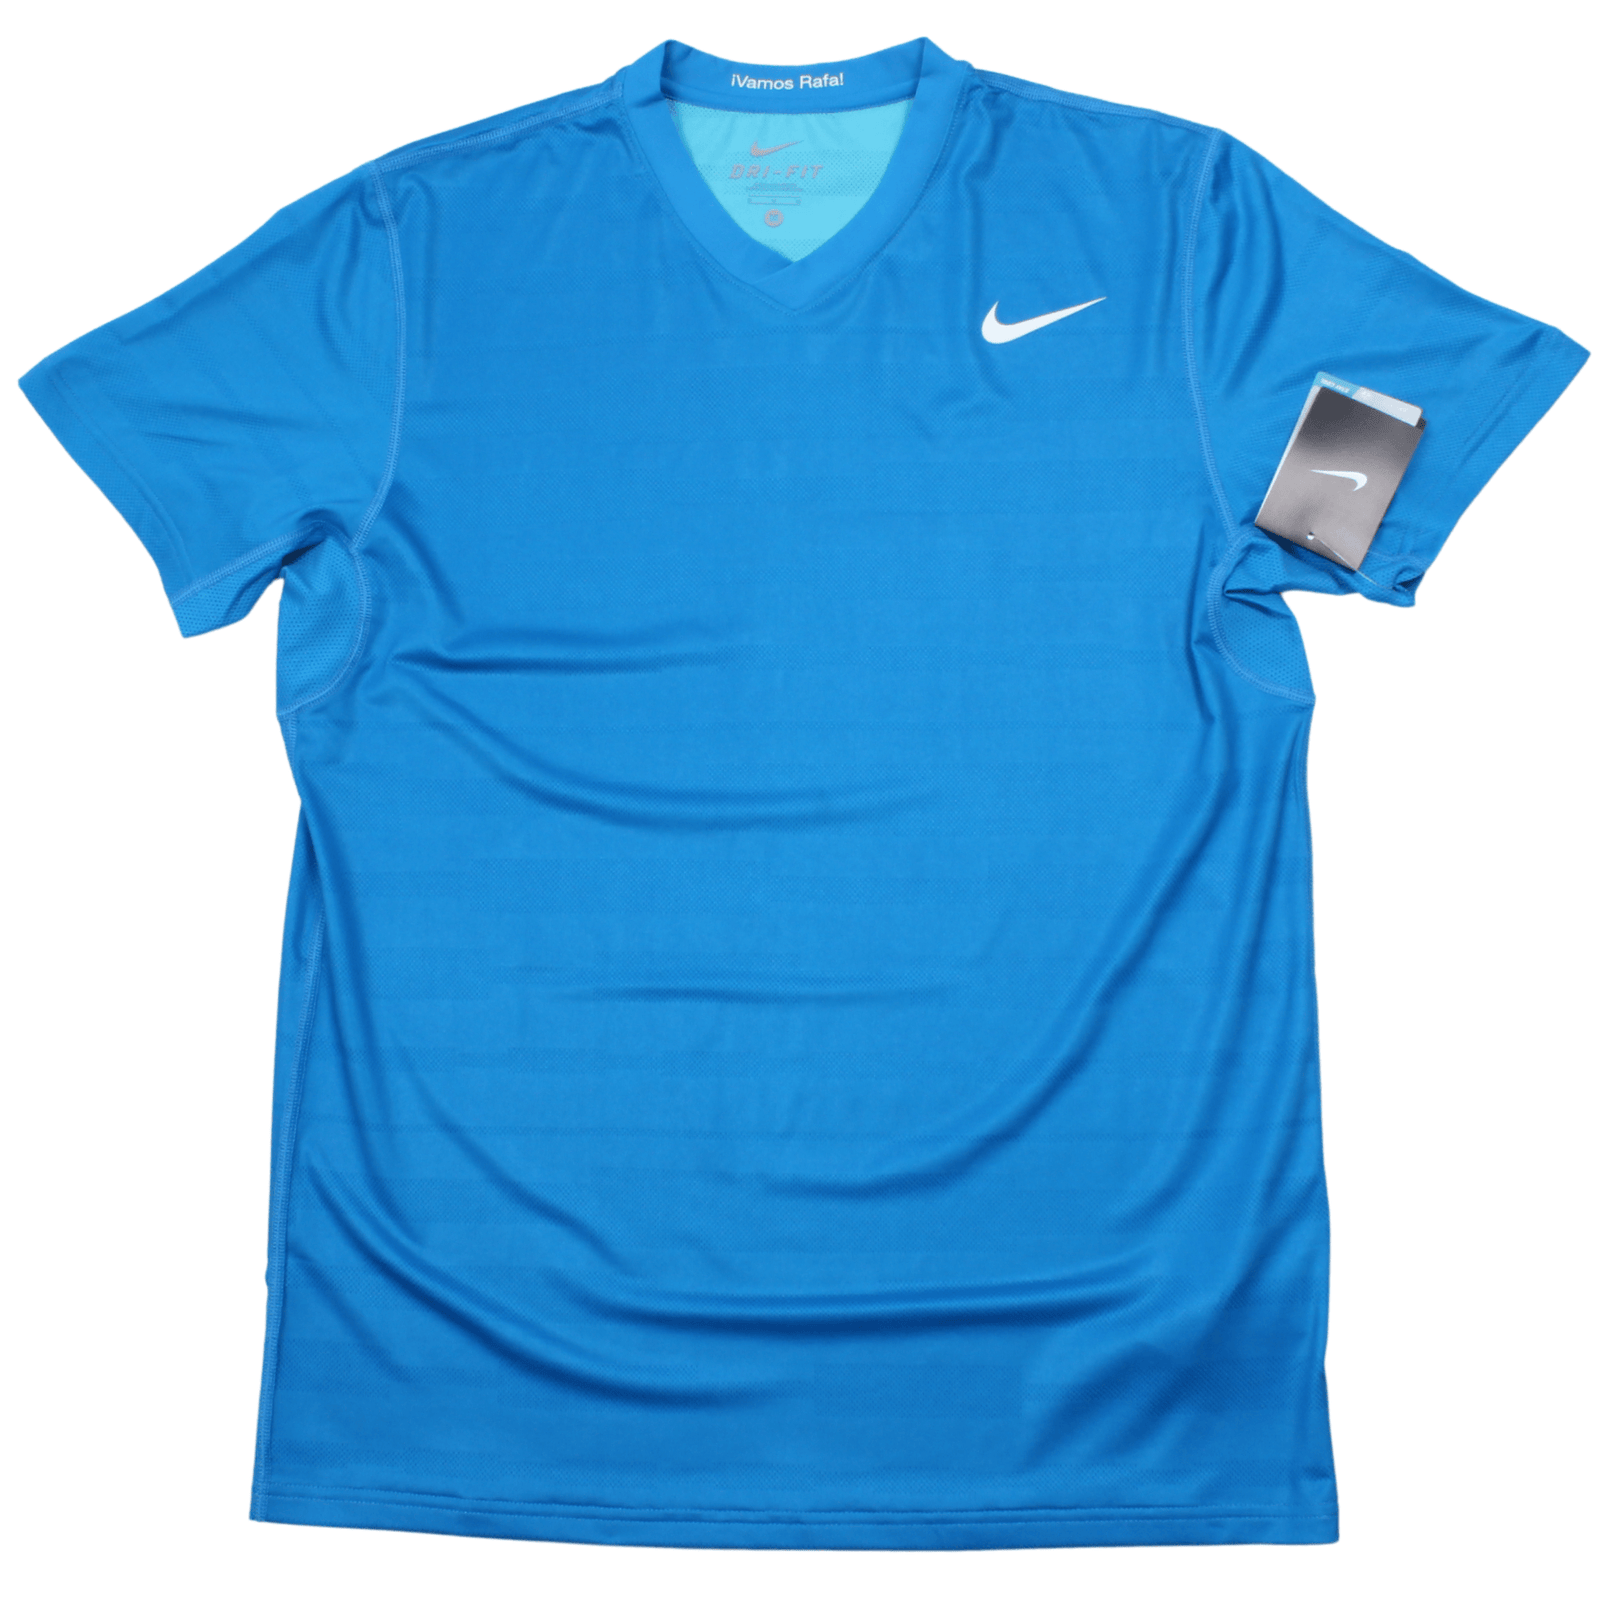 Nike Rafael Nadal T Shirt (M) BNWT